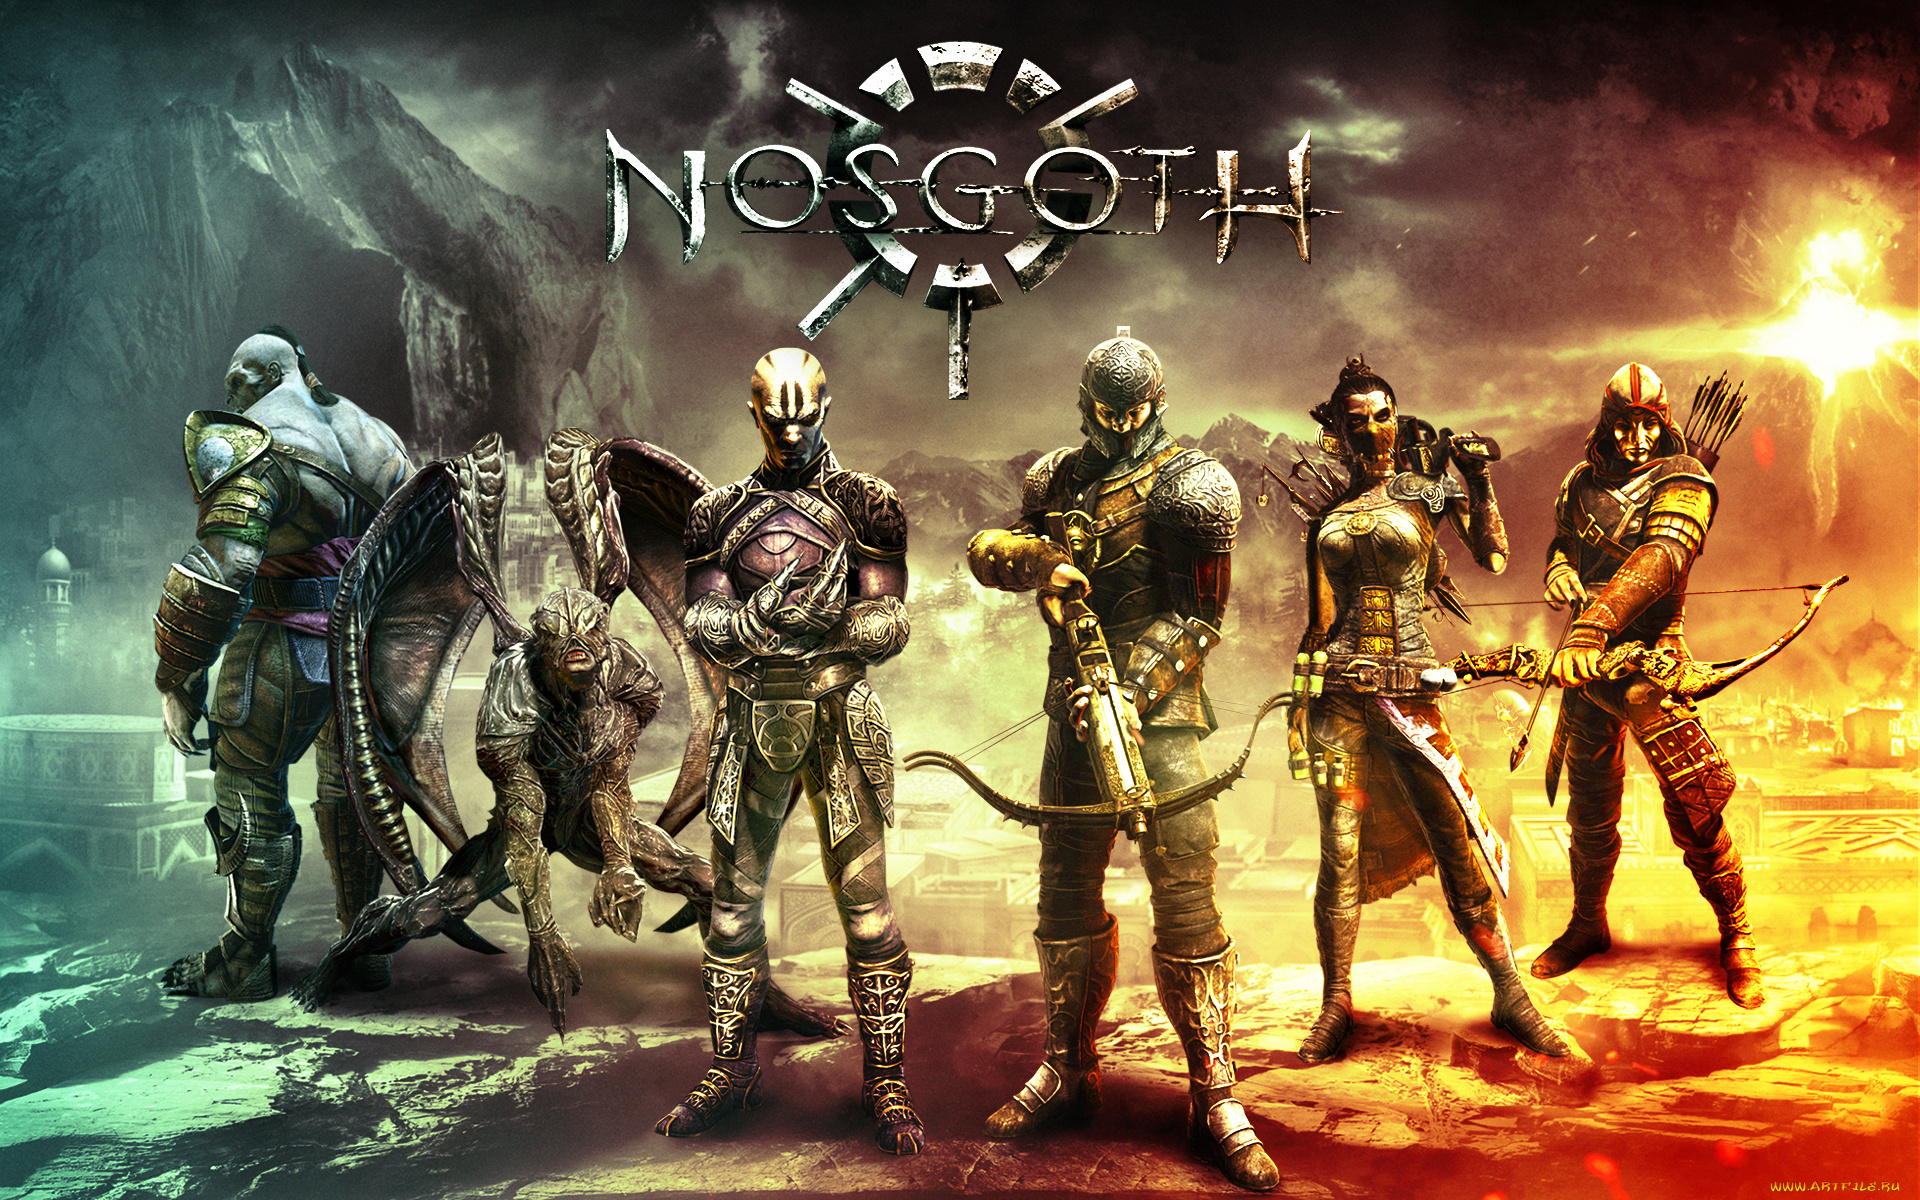 nosgoth, видео, игры, -, nosgoth, фэнтези, шутер, игра, онлайн